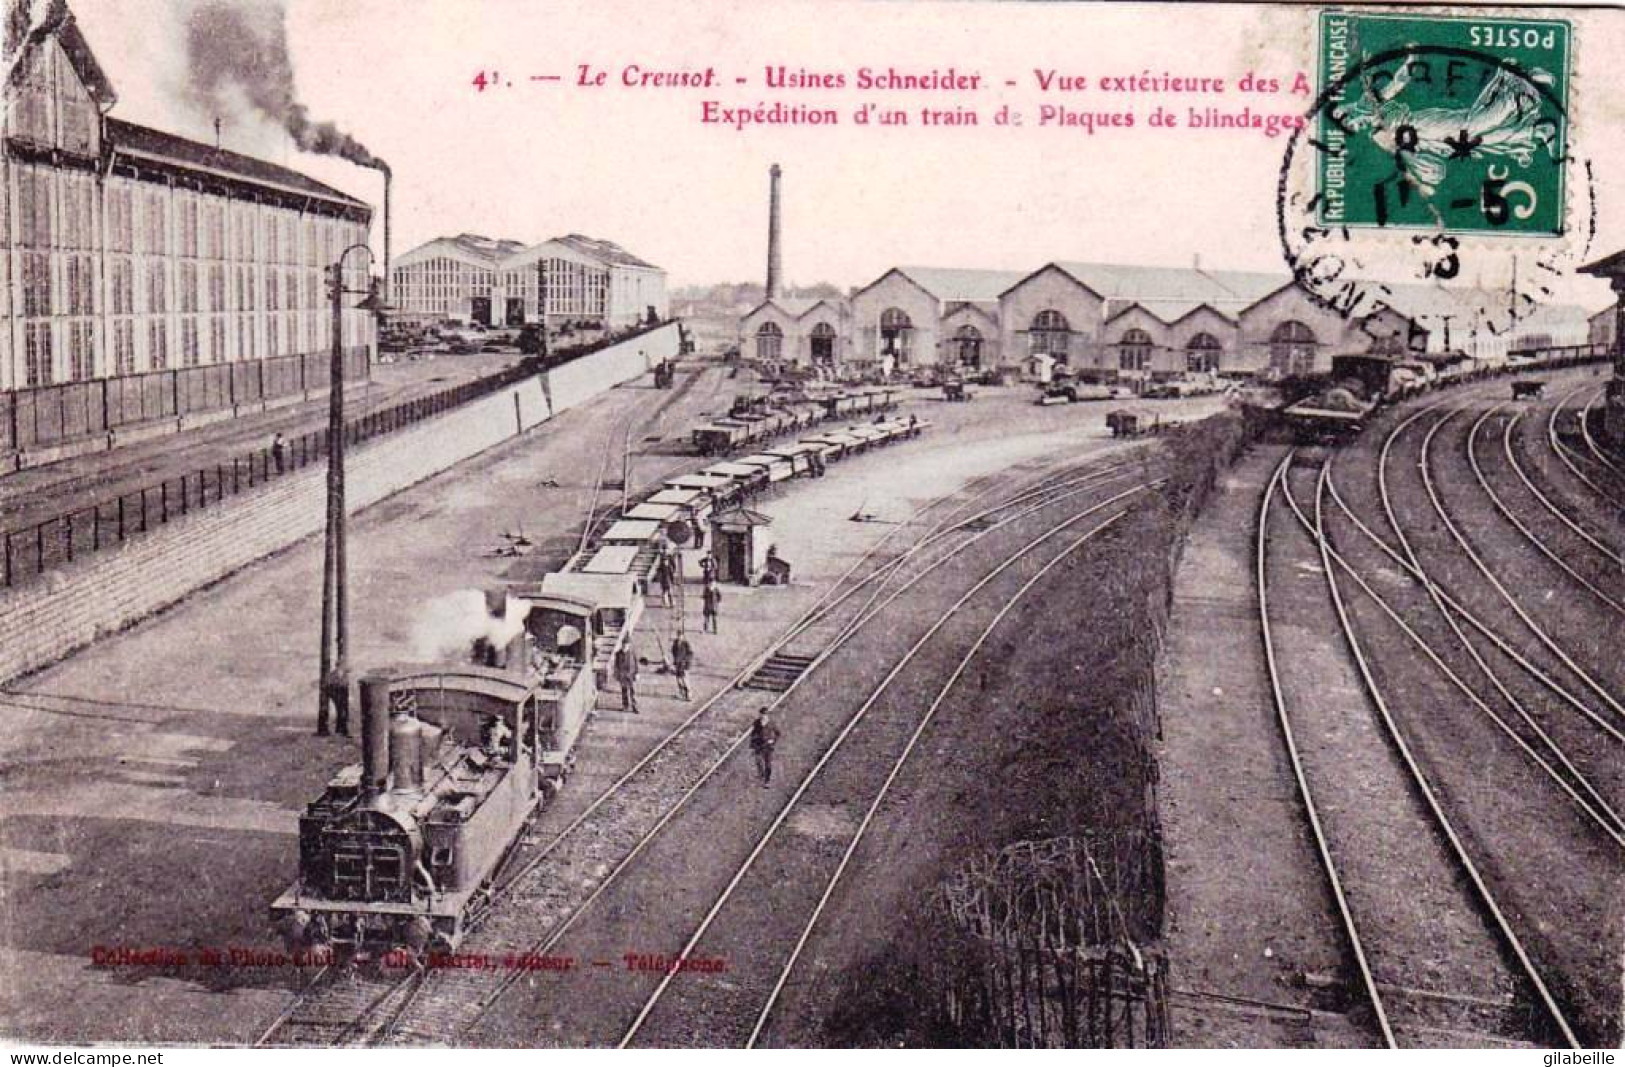 71 - Saone Et Loire -  LE CREUSOT - Usines Schneider - Vue Des Ateliers - Expedition D Un Train De Plaques De Blindages - Le Creusot